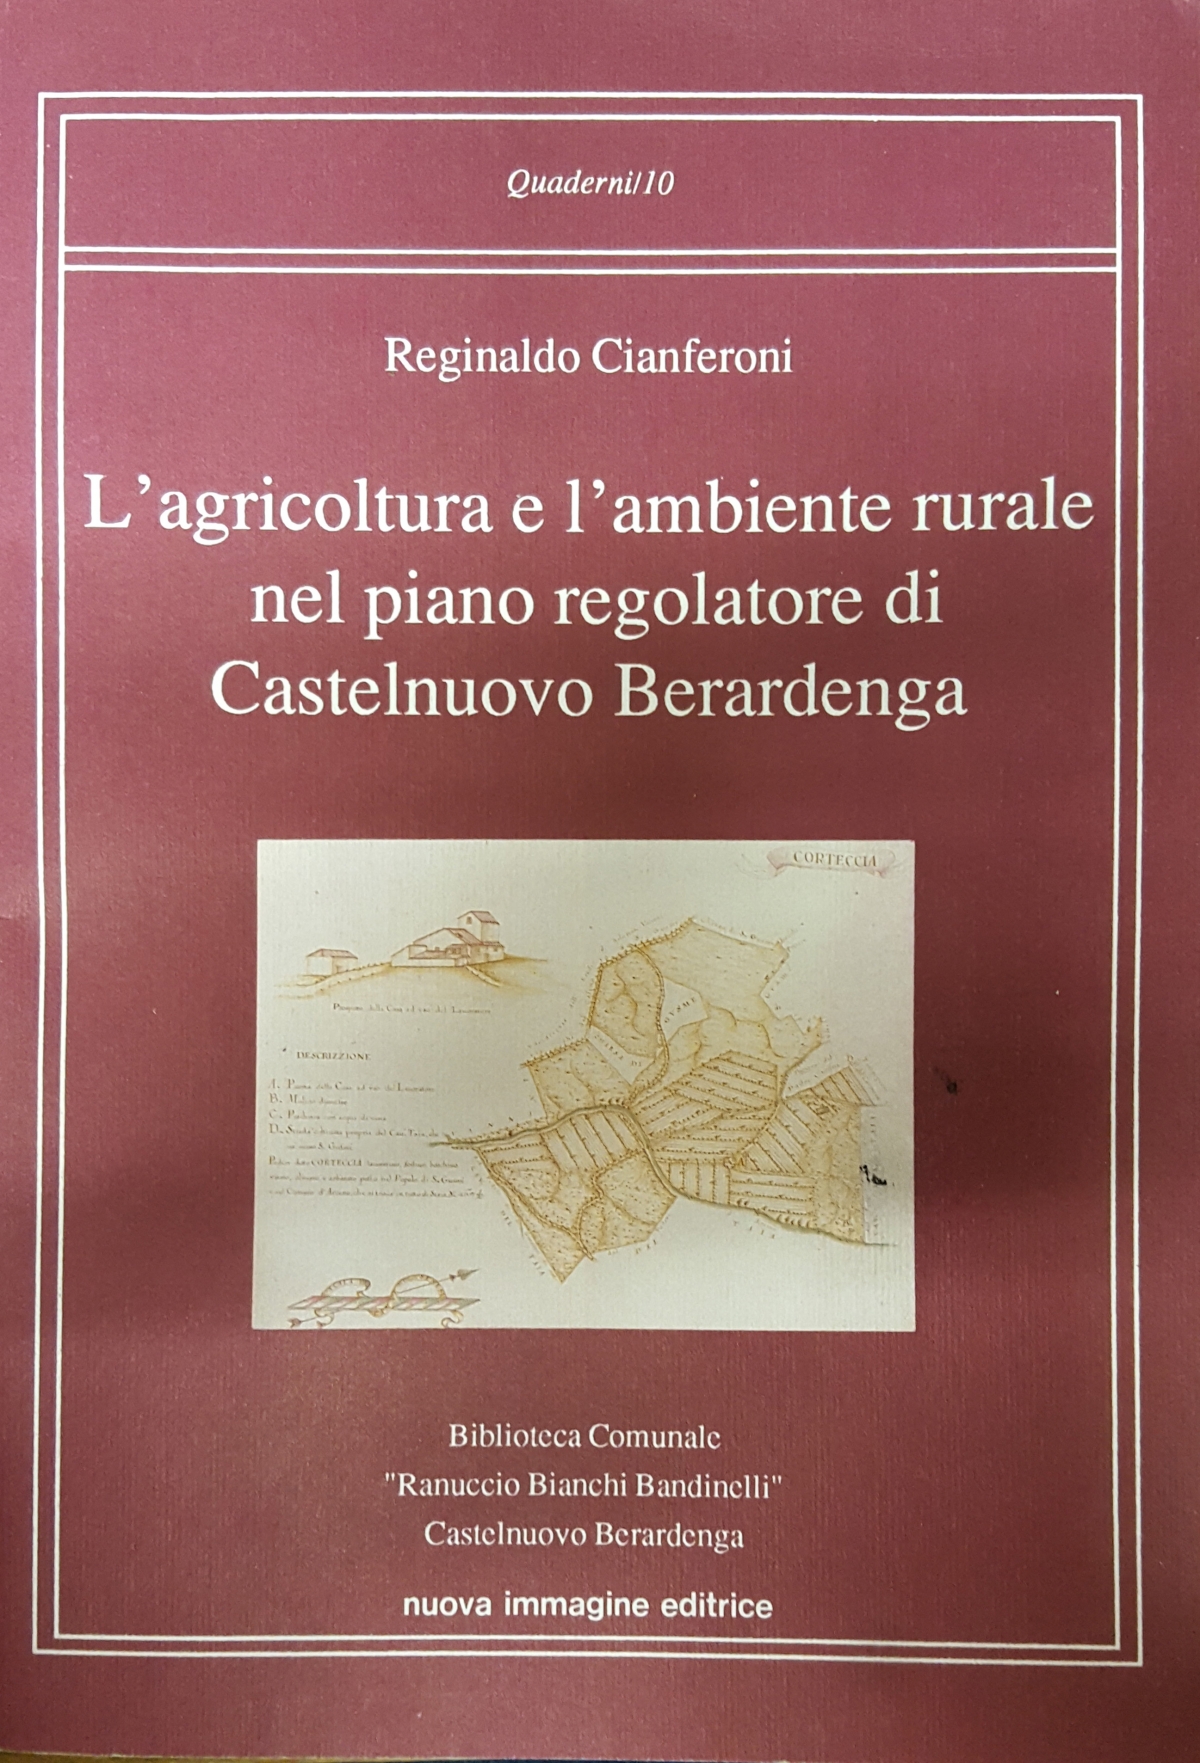 L’agricoltura e l’ambiente rurale nel piano regolatore di Castelnuovo Berardenga